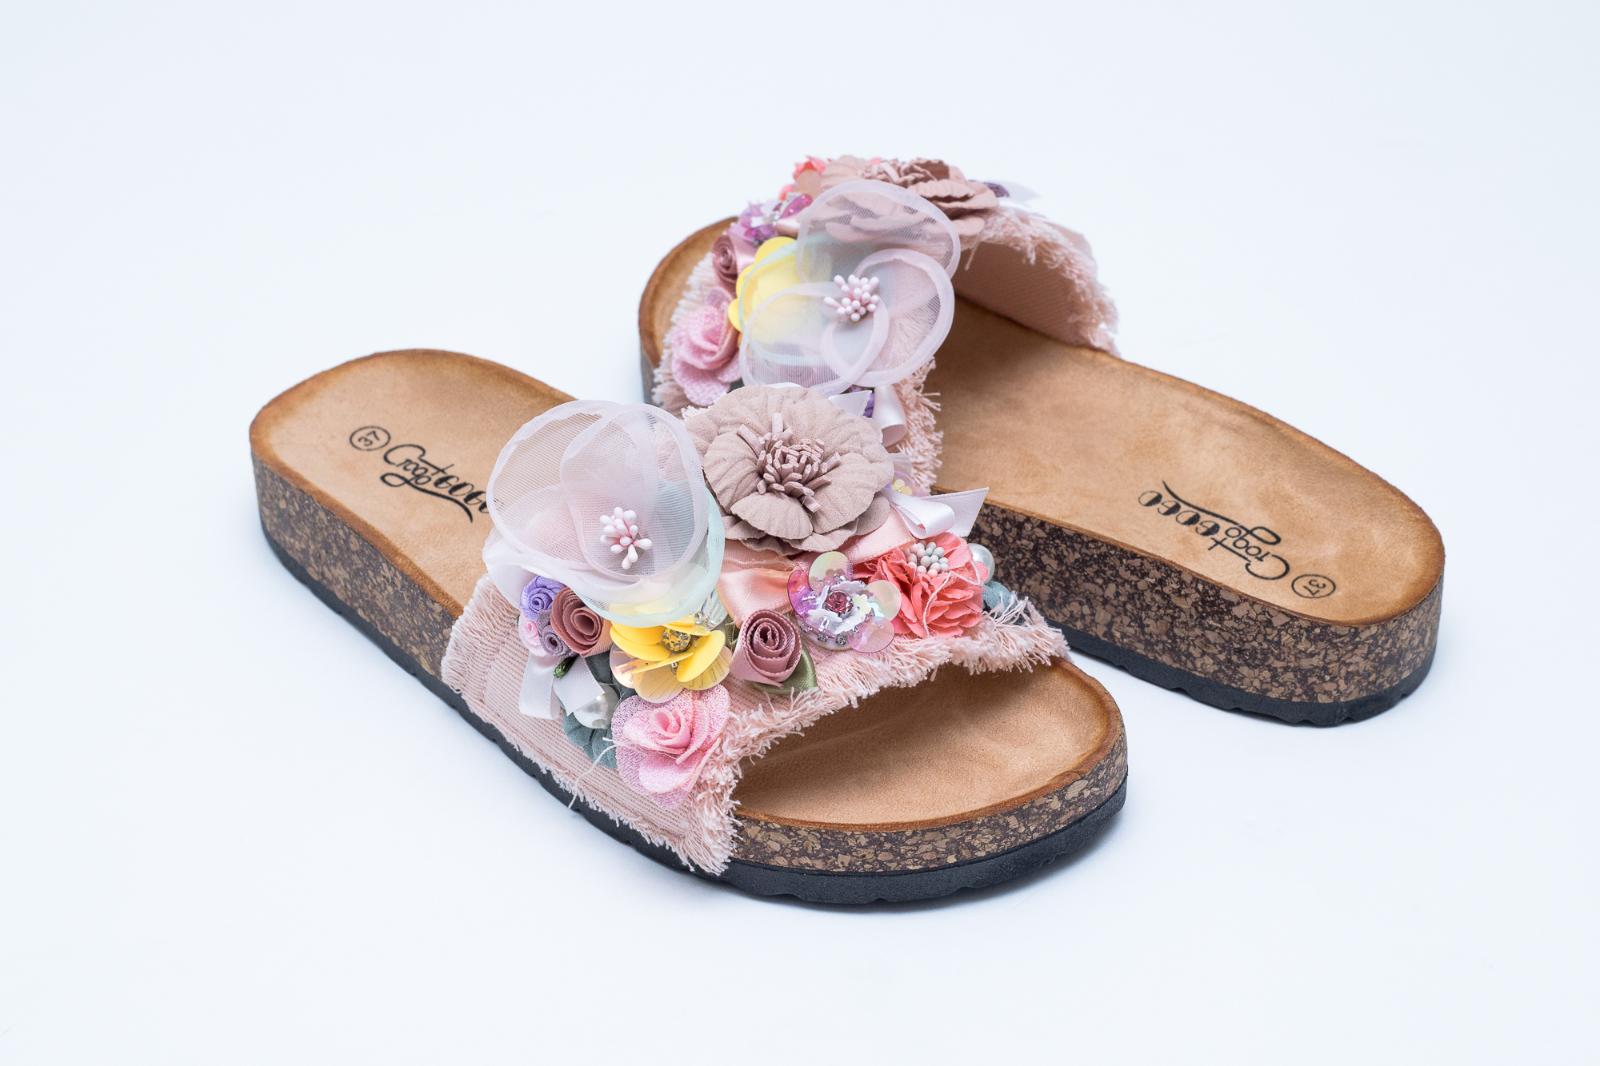 Růžové korkové pantofle 36,37,38,39 - SKLADEM MODRÉ A BÍLÉ - Oblečení, obuv a doplňky